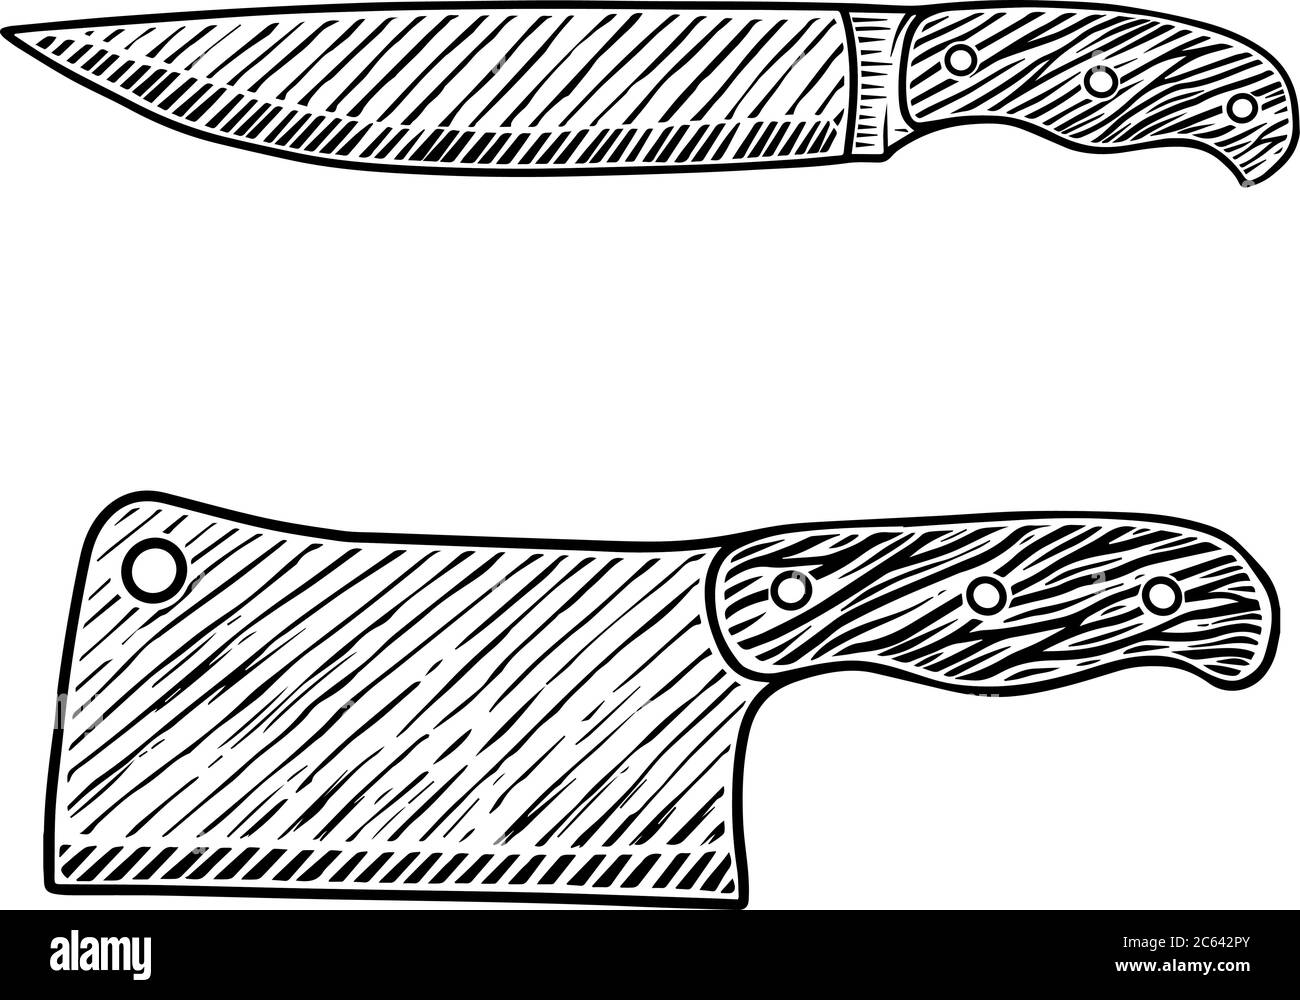 Illustration du couteau à viande et du couteau de boucherie en style gravure. Élément de design pour logo, étiquette, emblème, signe, badge. Illustration vectorielle Illustration de Vecteur